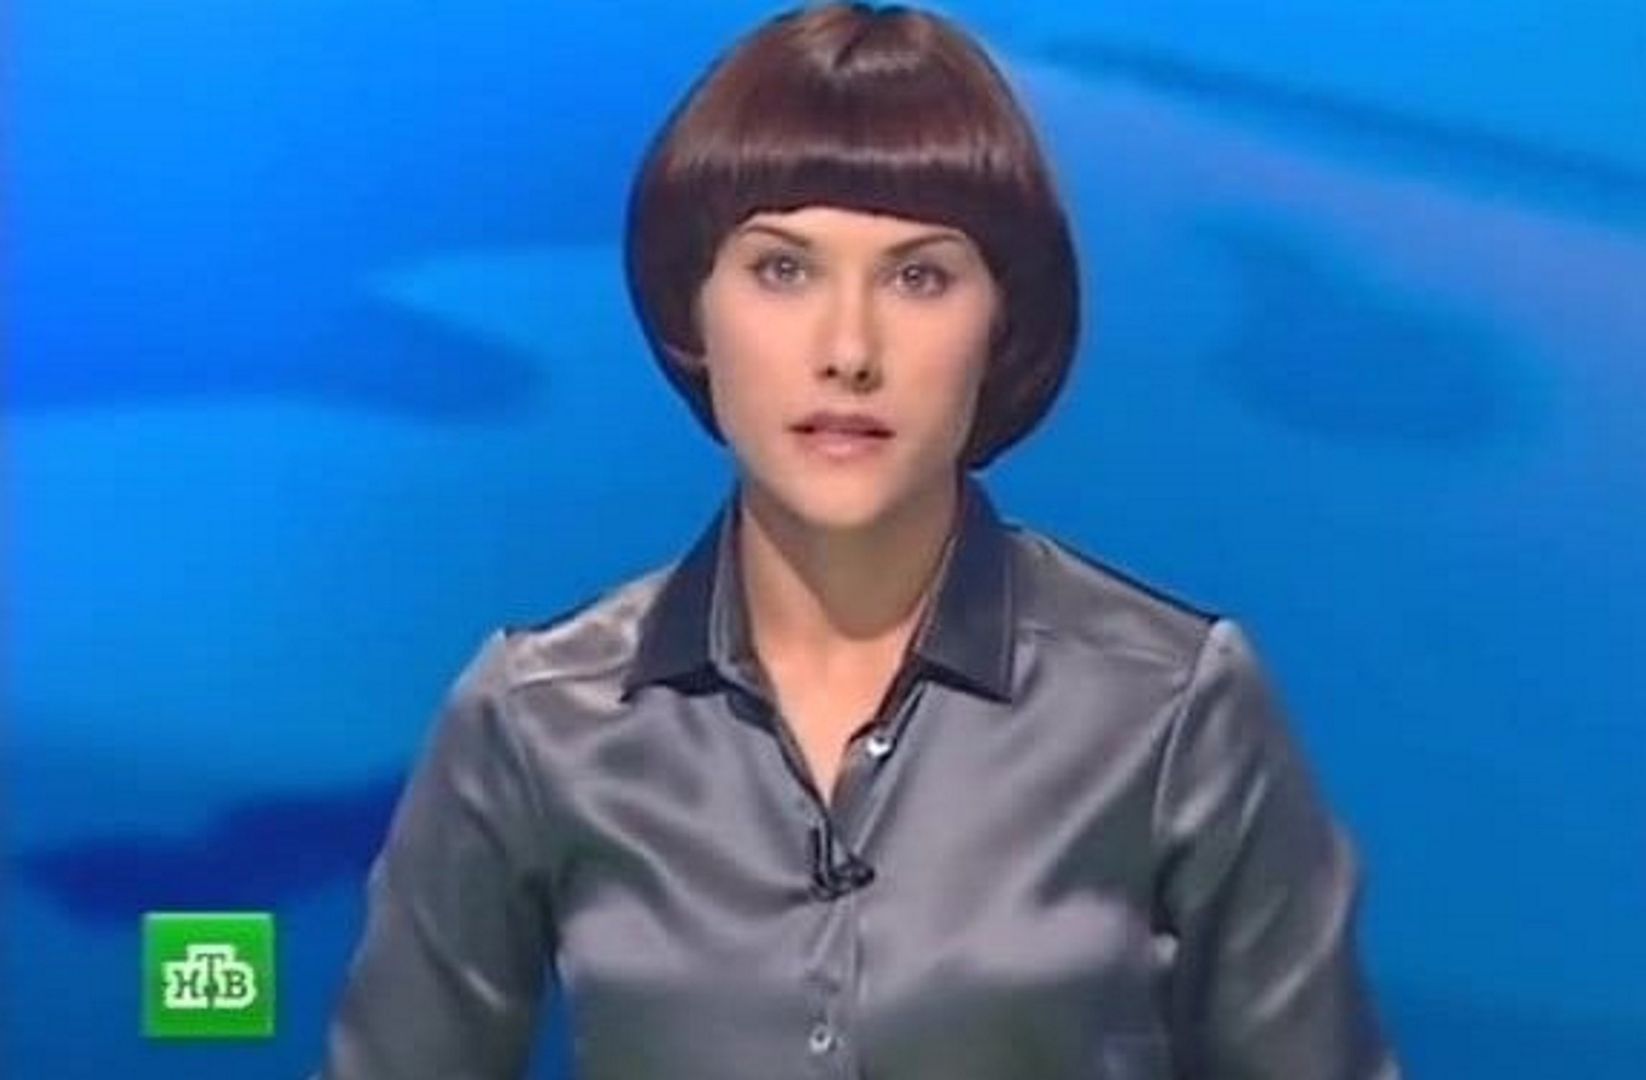 Gwiazda rosyjskiej TV rzuciła pracę. W taki sposób powiadomiła przełożonych